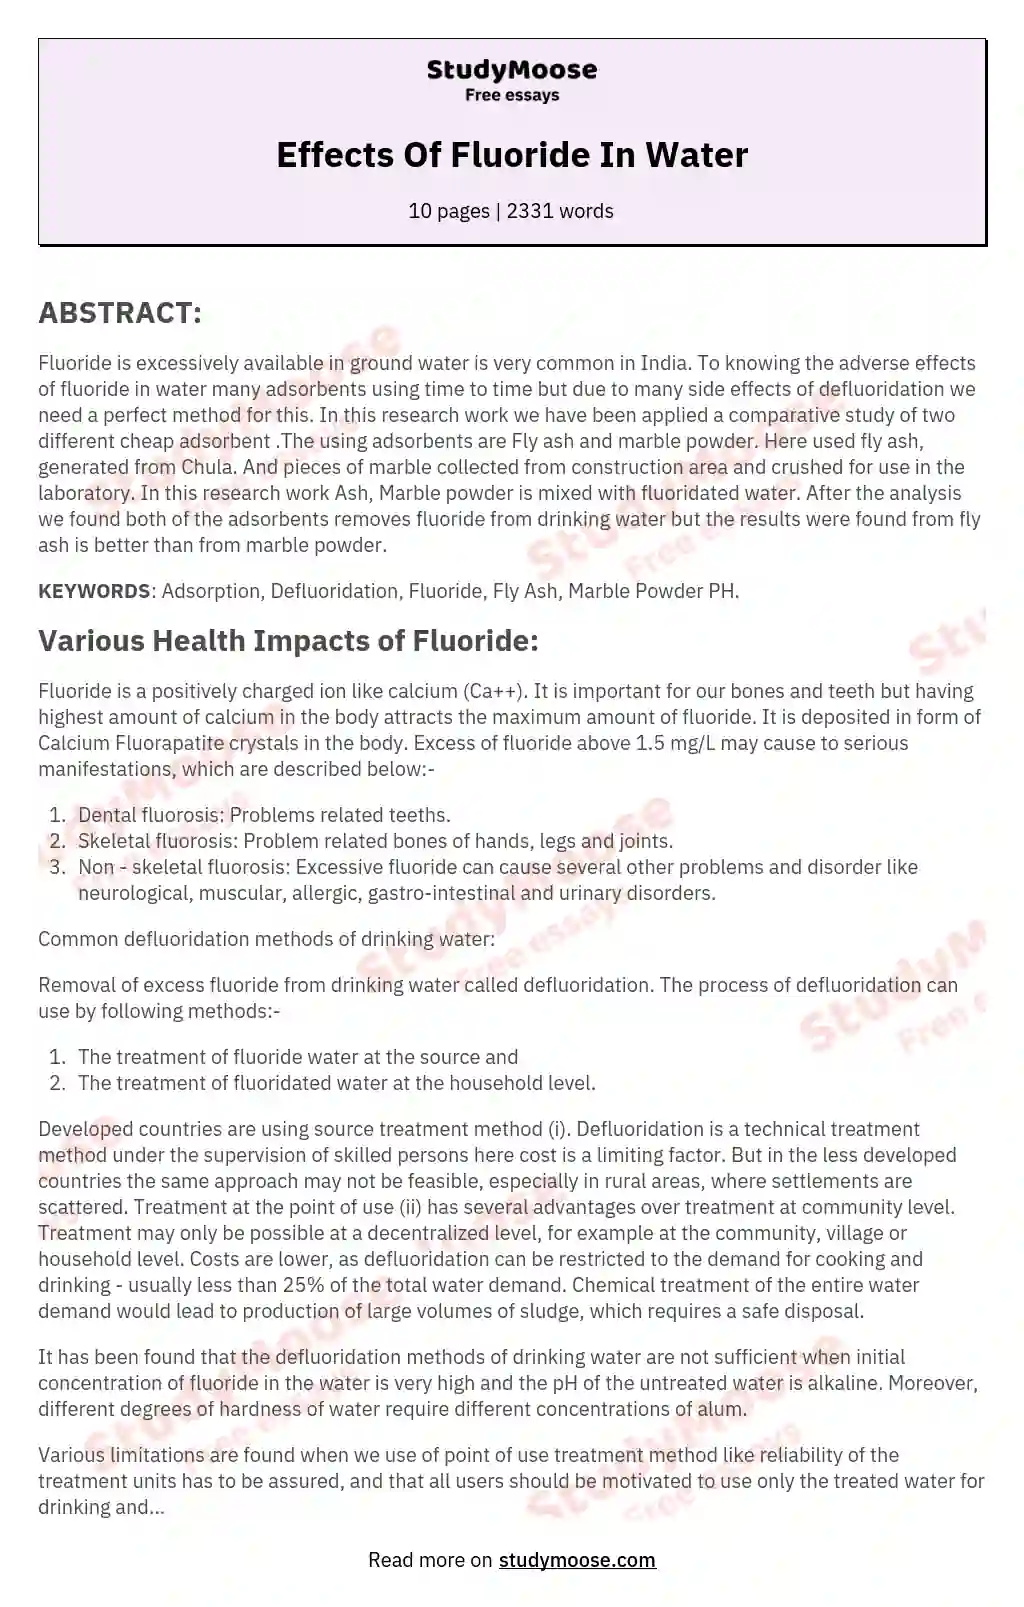 Effects Of Fluoride In Water essay